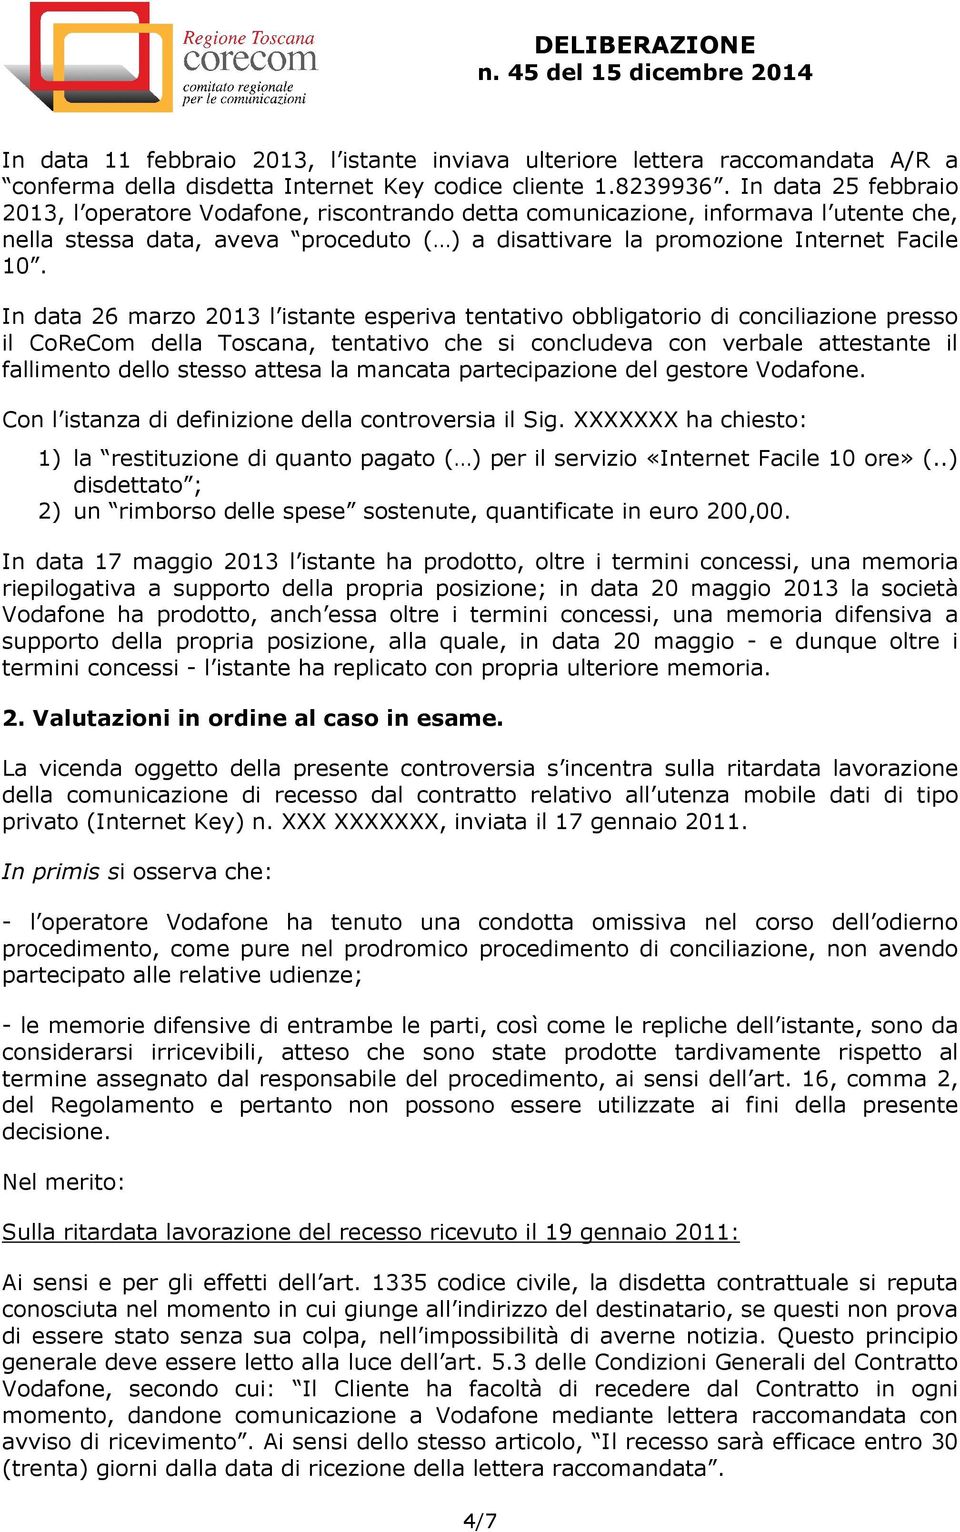 In data 26 marzo 2013 l istante esperiva tentativo obbligatorio di conciliazione presso il CoReCom della Toscana, tentativo che si concludeva con verbale attestante il fallimento dello stesso attesa